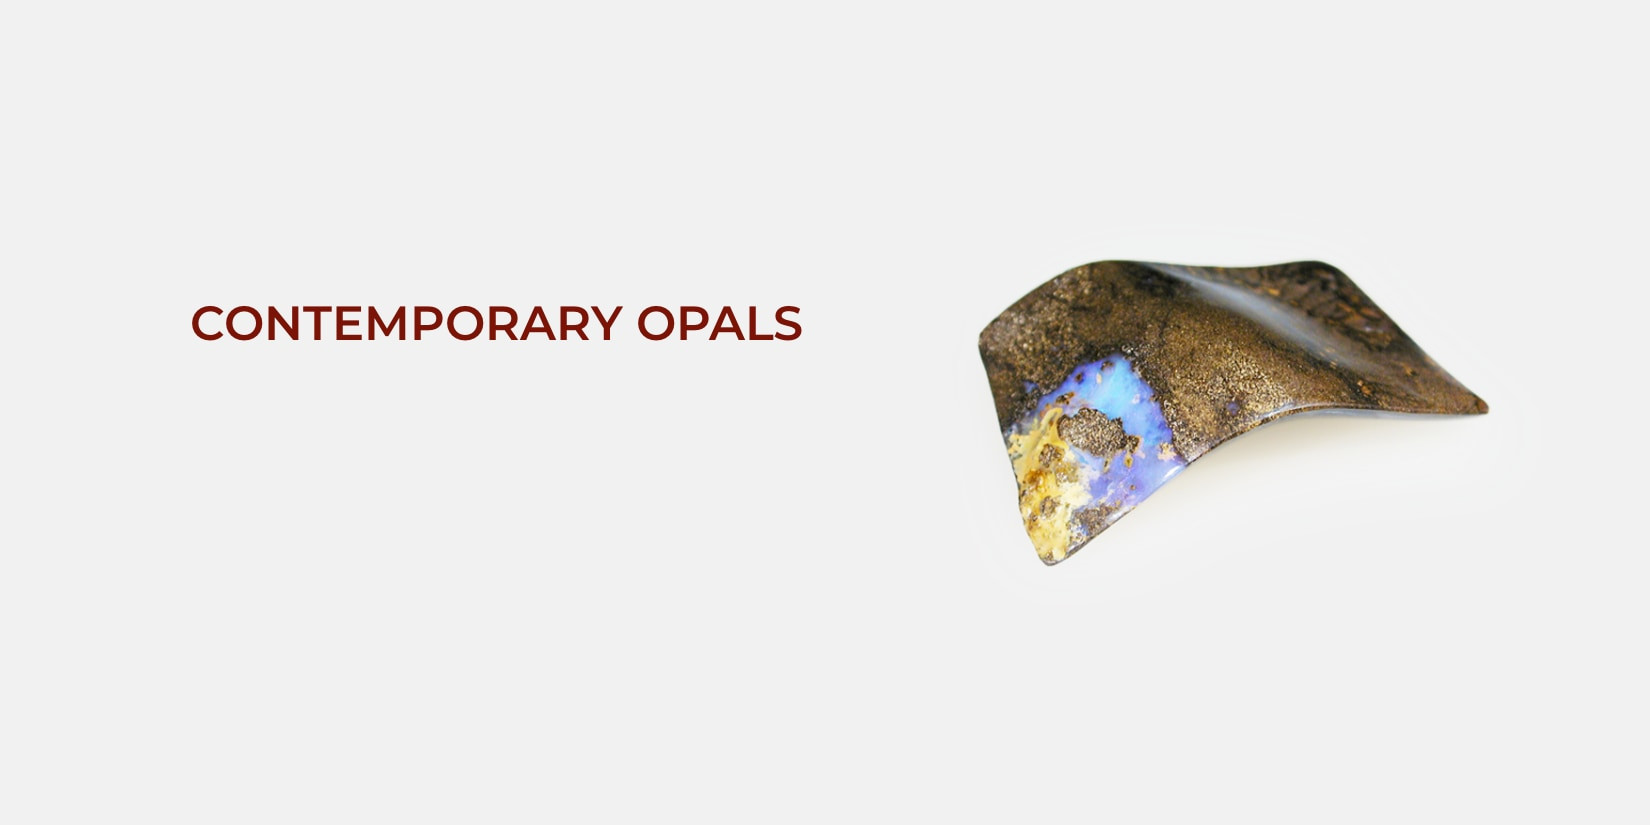 Boulder opal sculpture